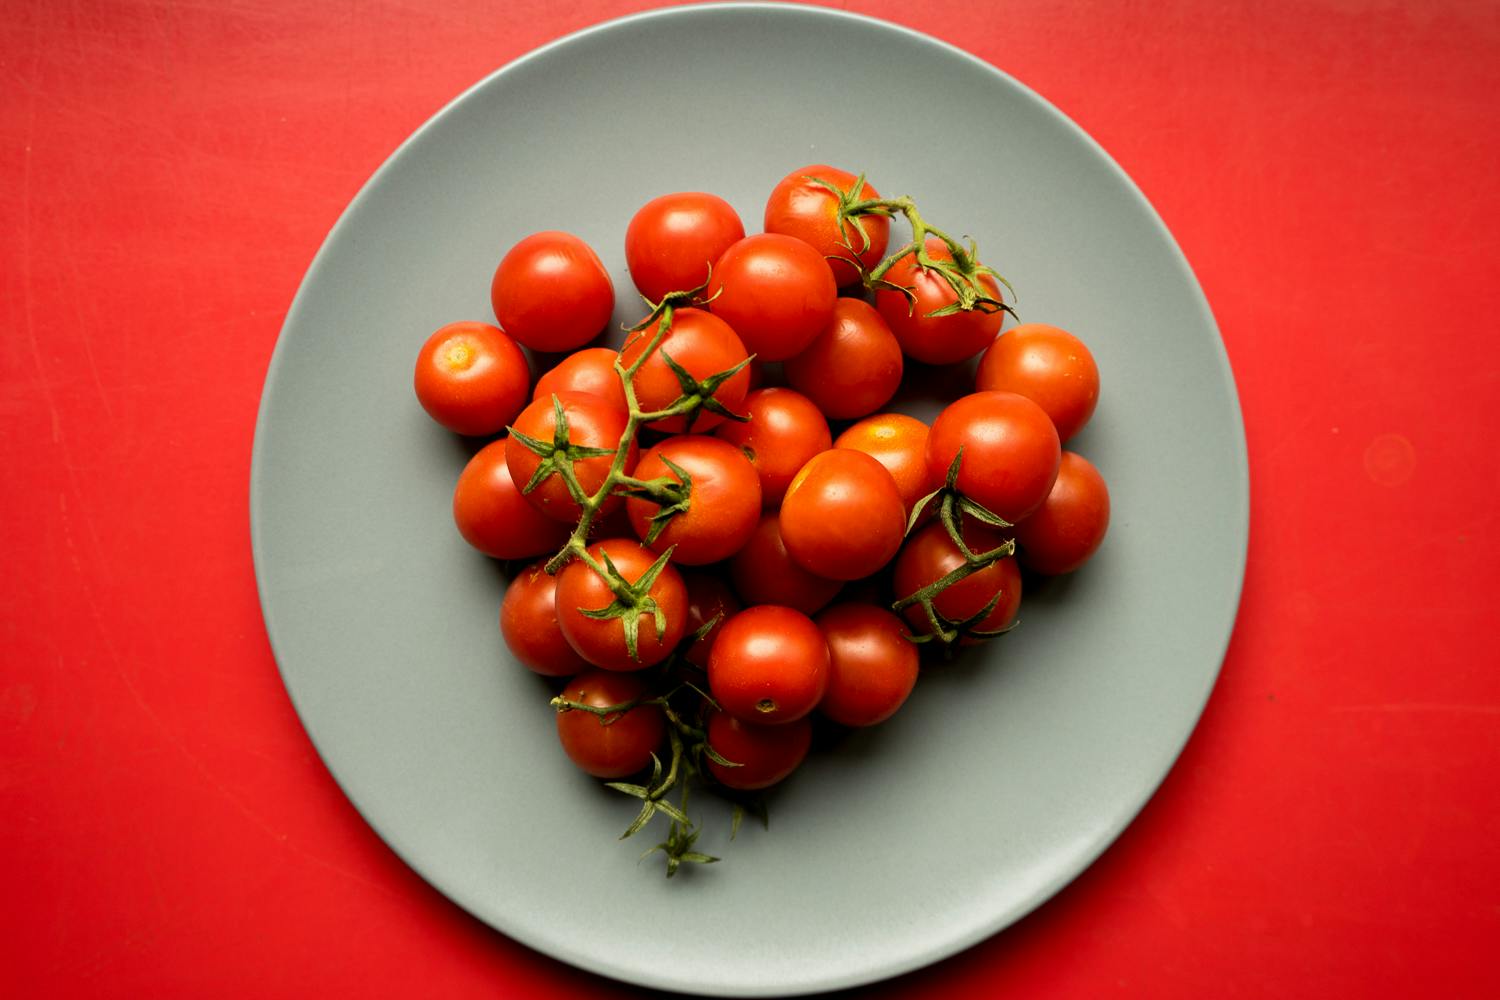 Was diese Netto-Tomaten mit dem Anti-Terror-Kampf zu tun haben